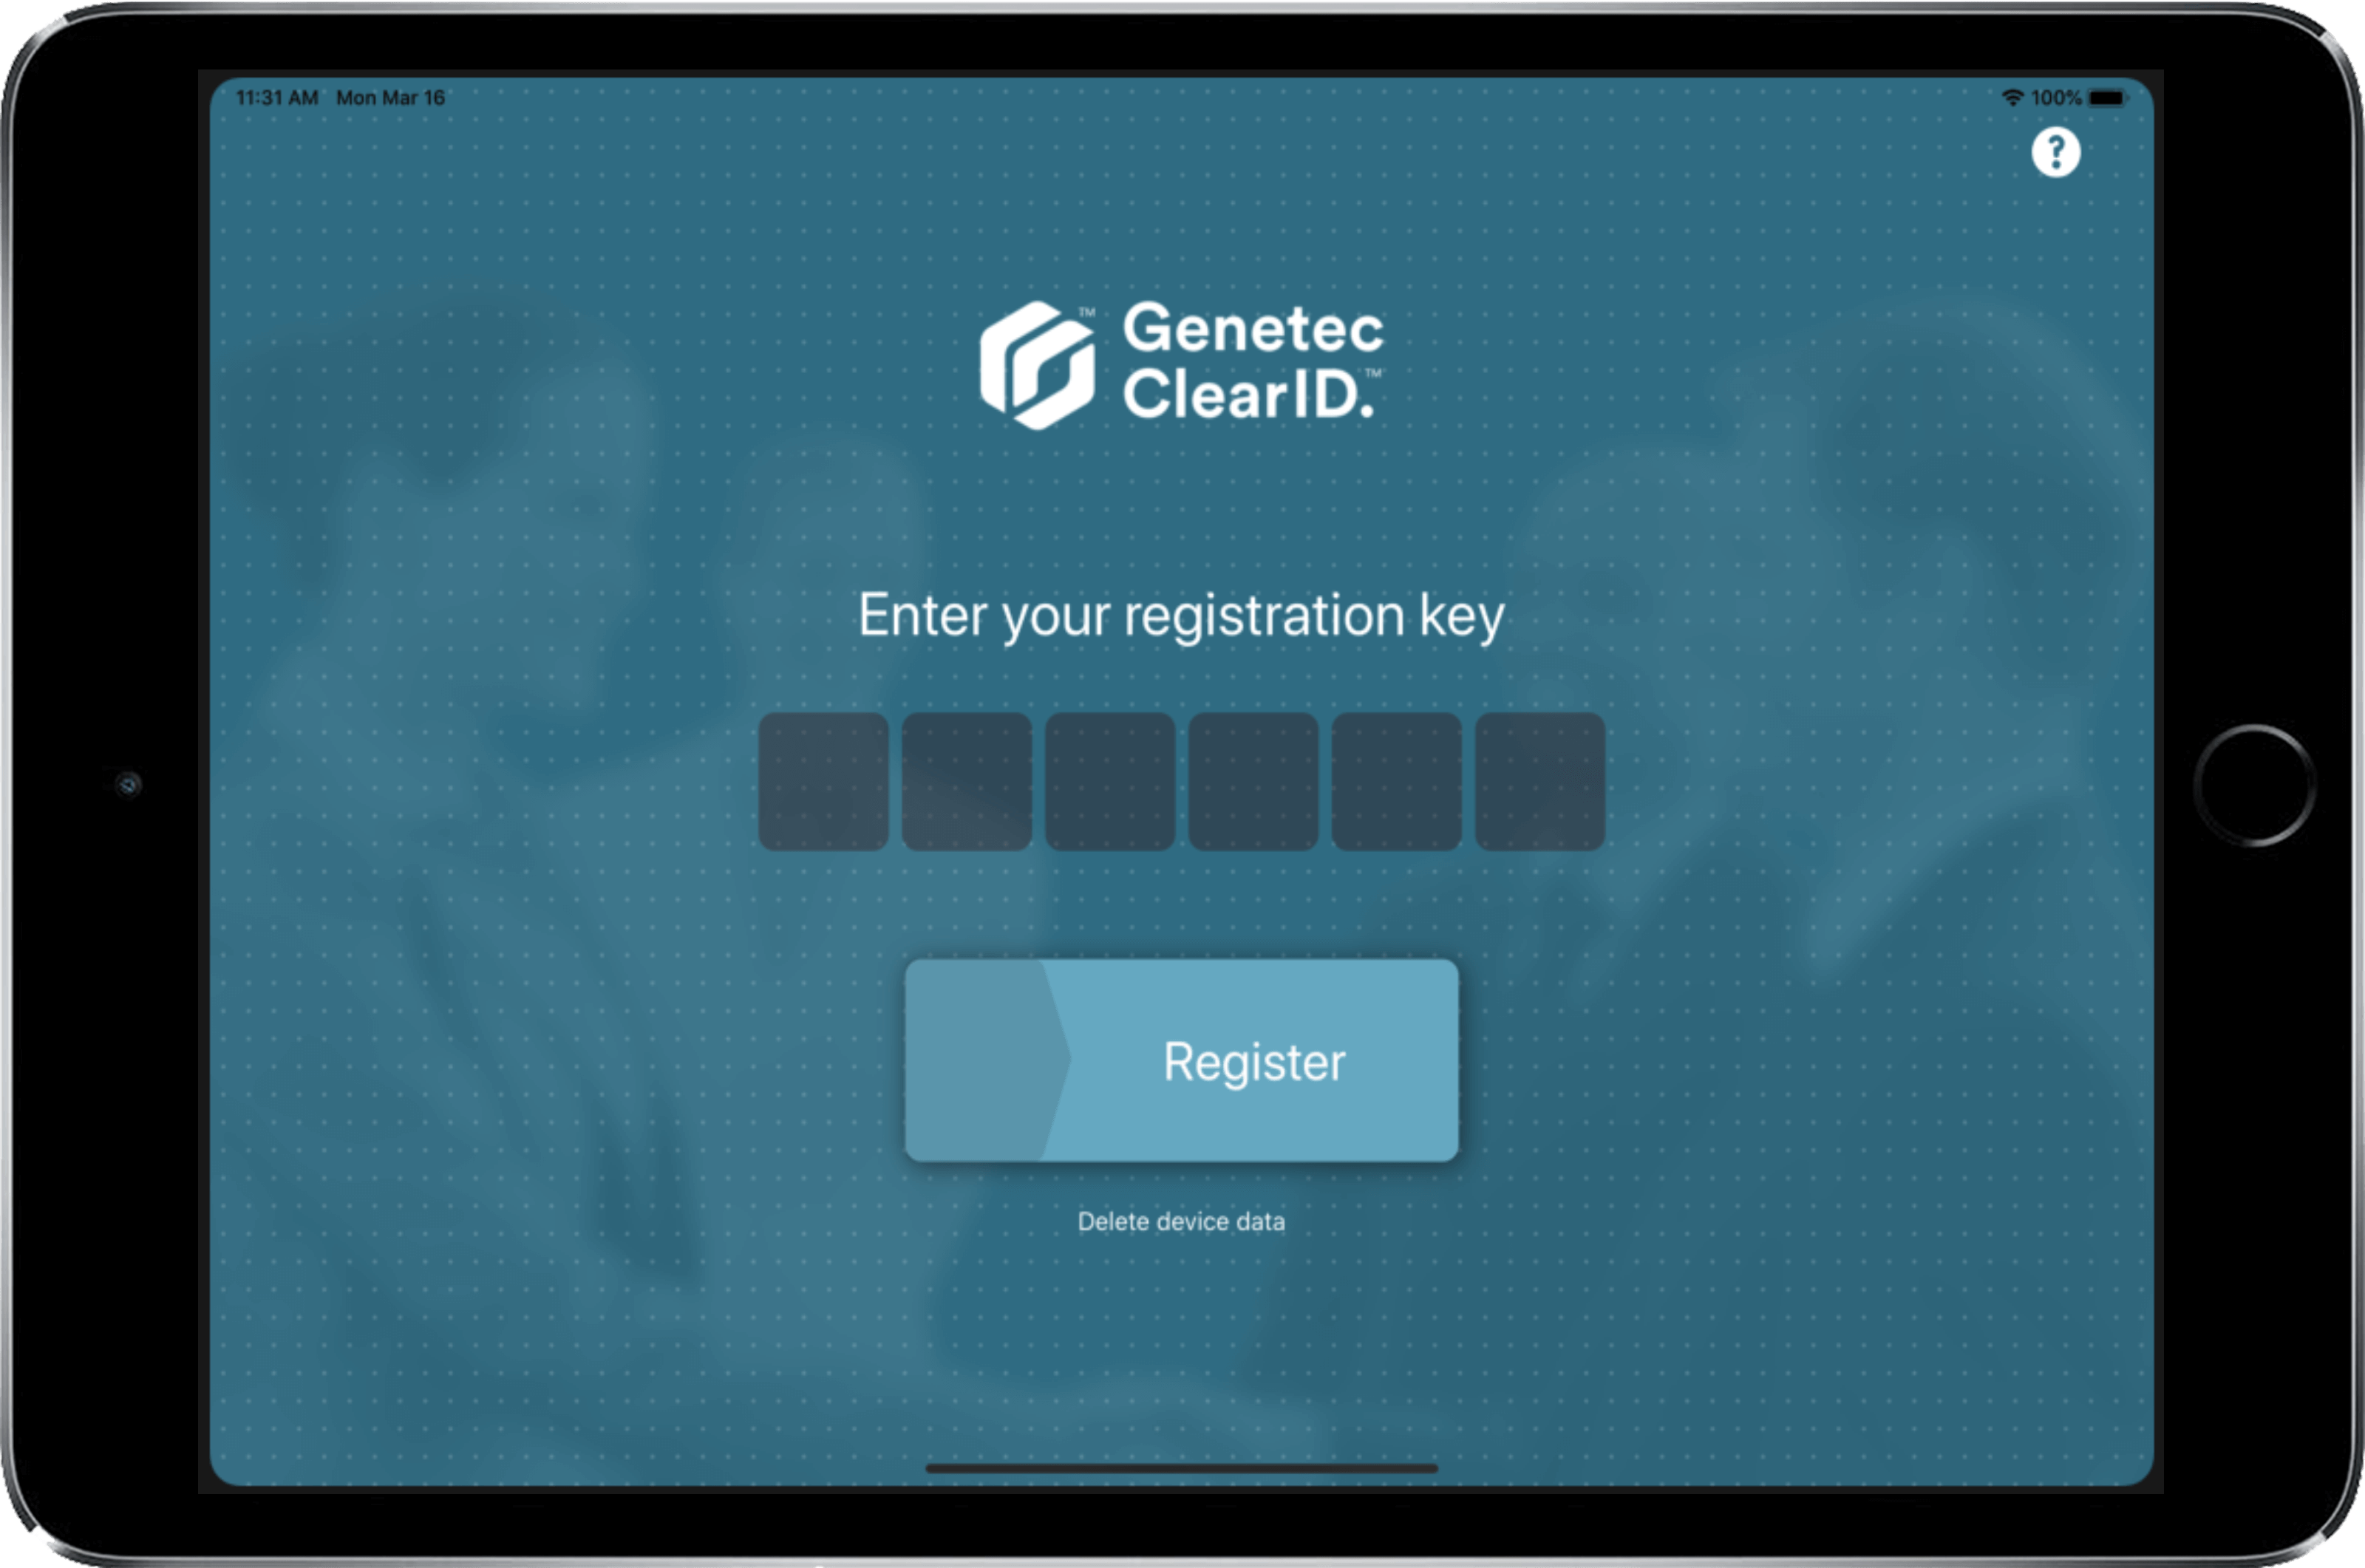 Ejemplo de la aplicación móvil Genetec ClearID Self-Service Kiosk que muestra la pantalla de clave de registro.